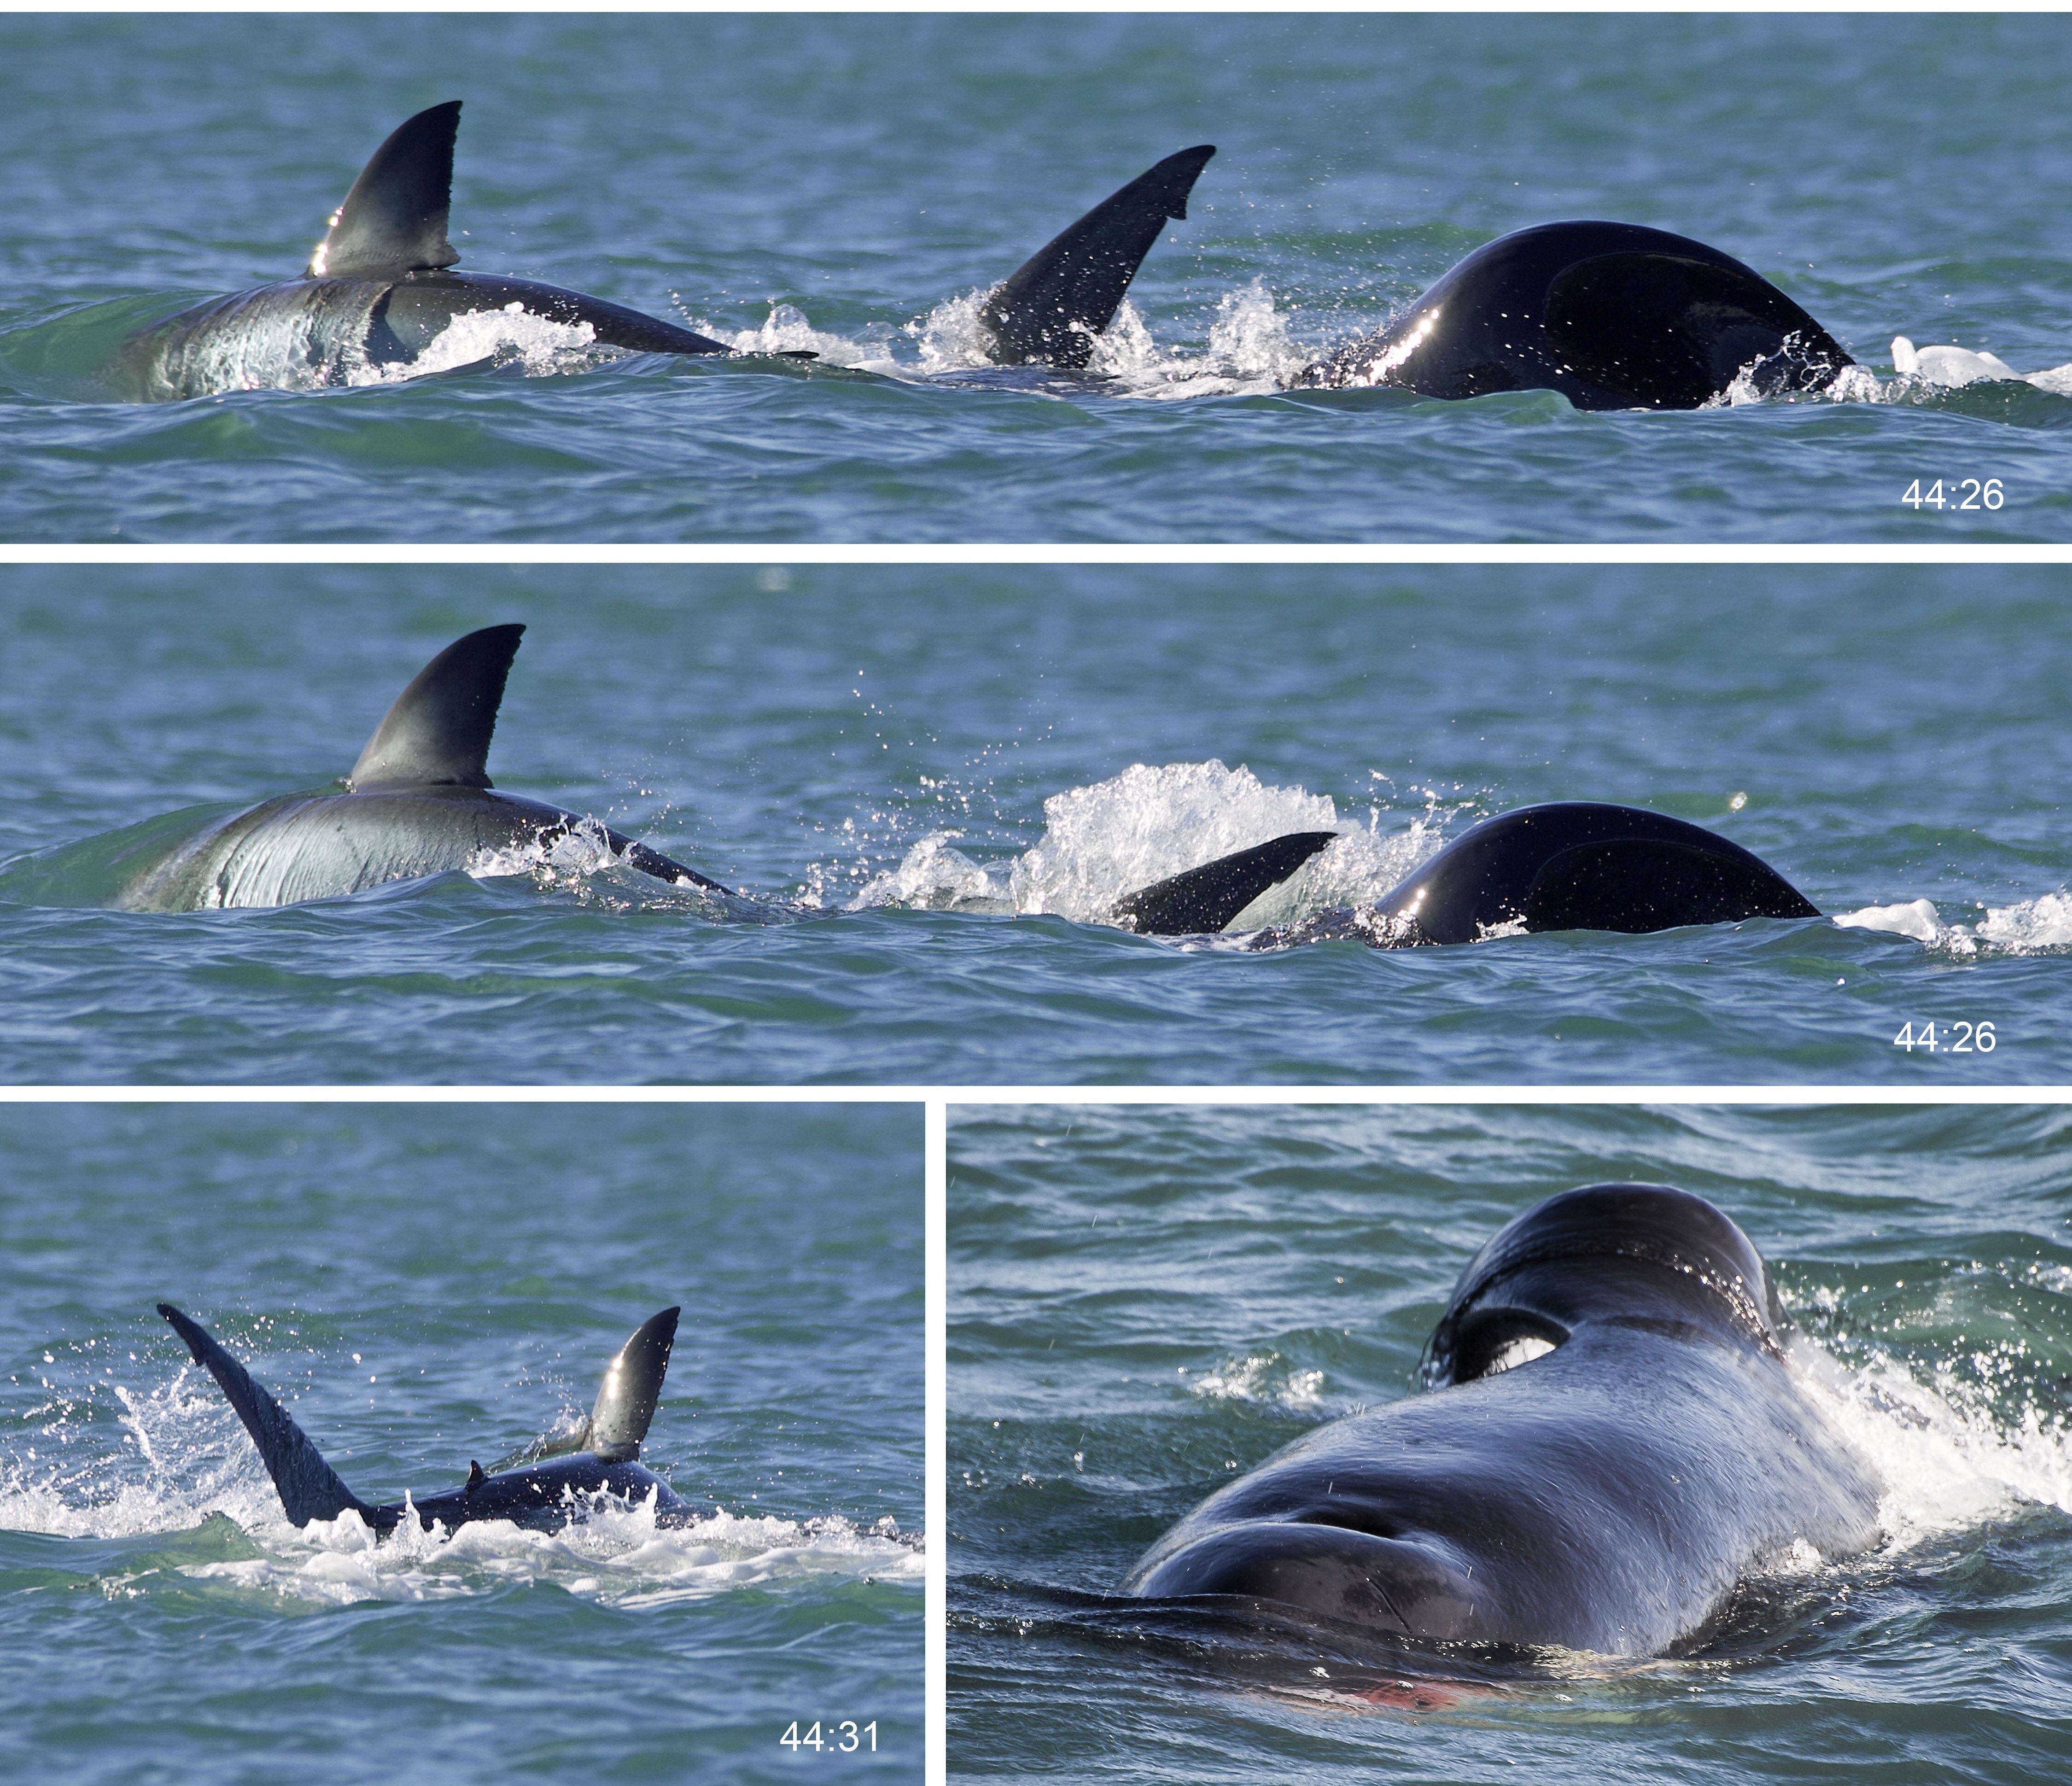 Secuencia fotográfica de una orca atacando individualmente a un tiburón blanco.